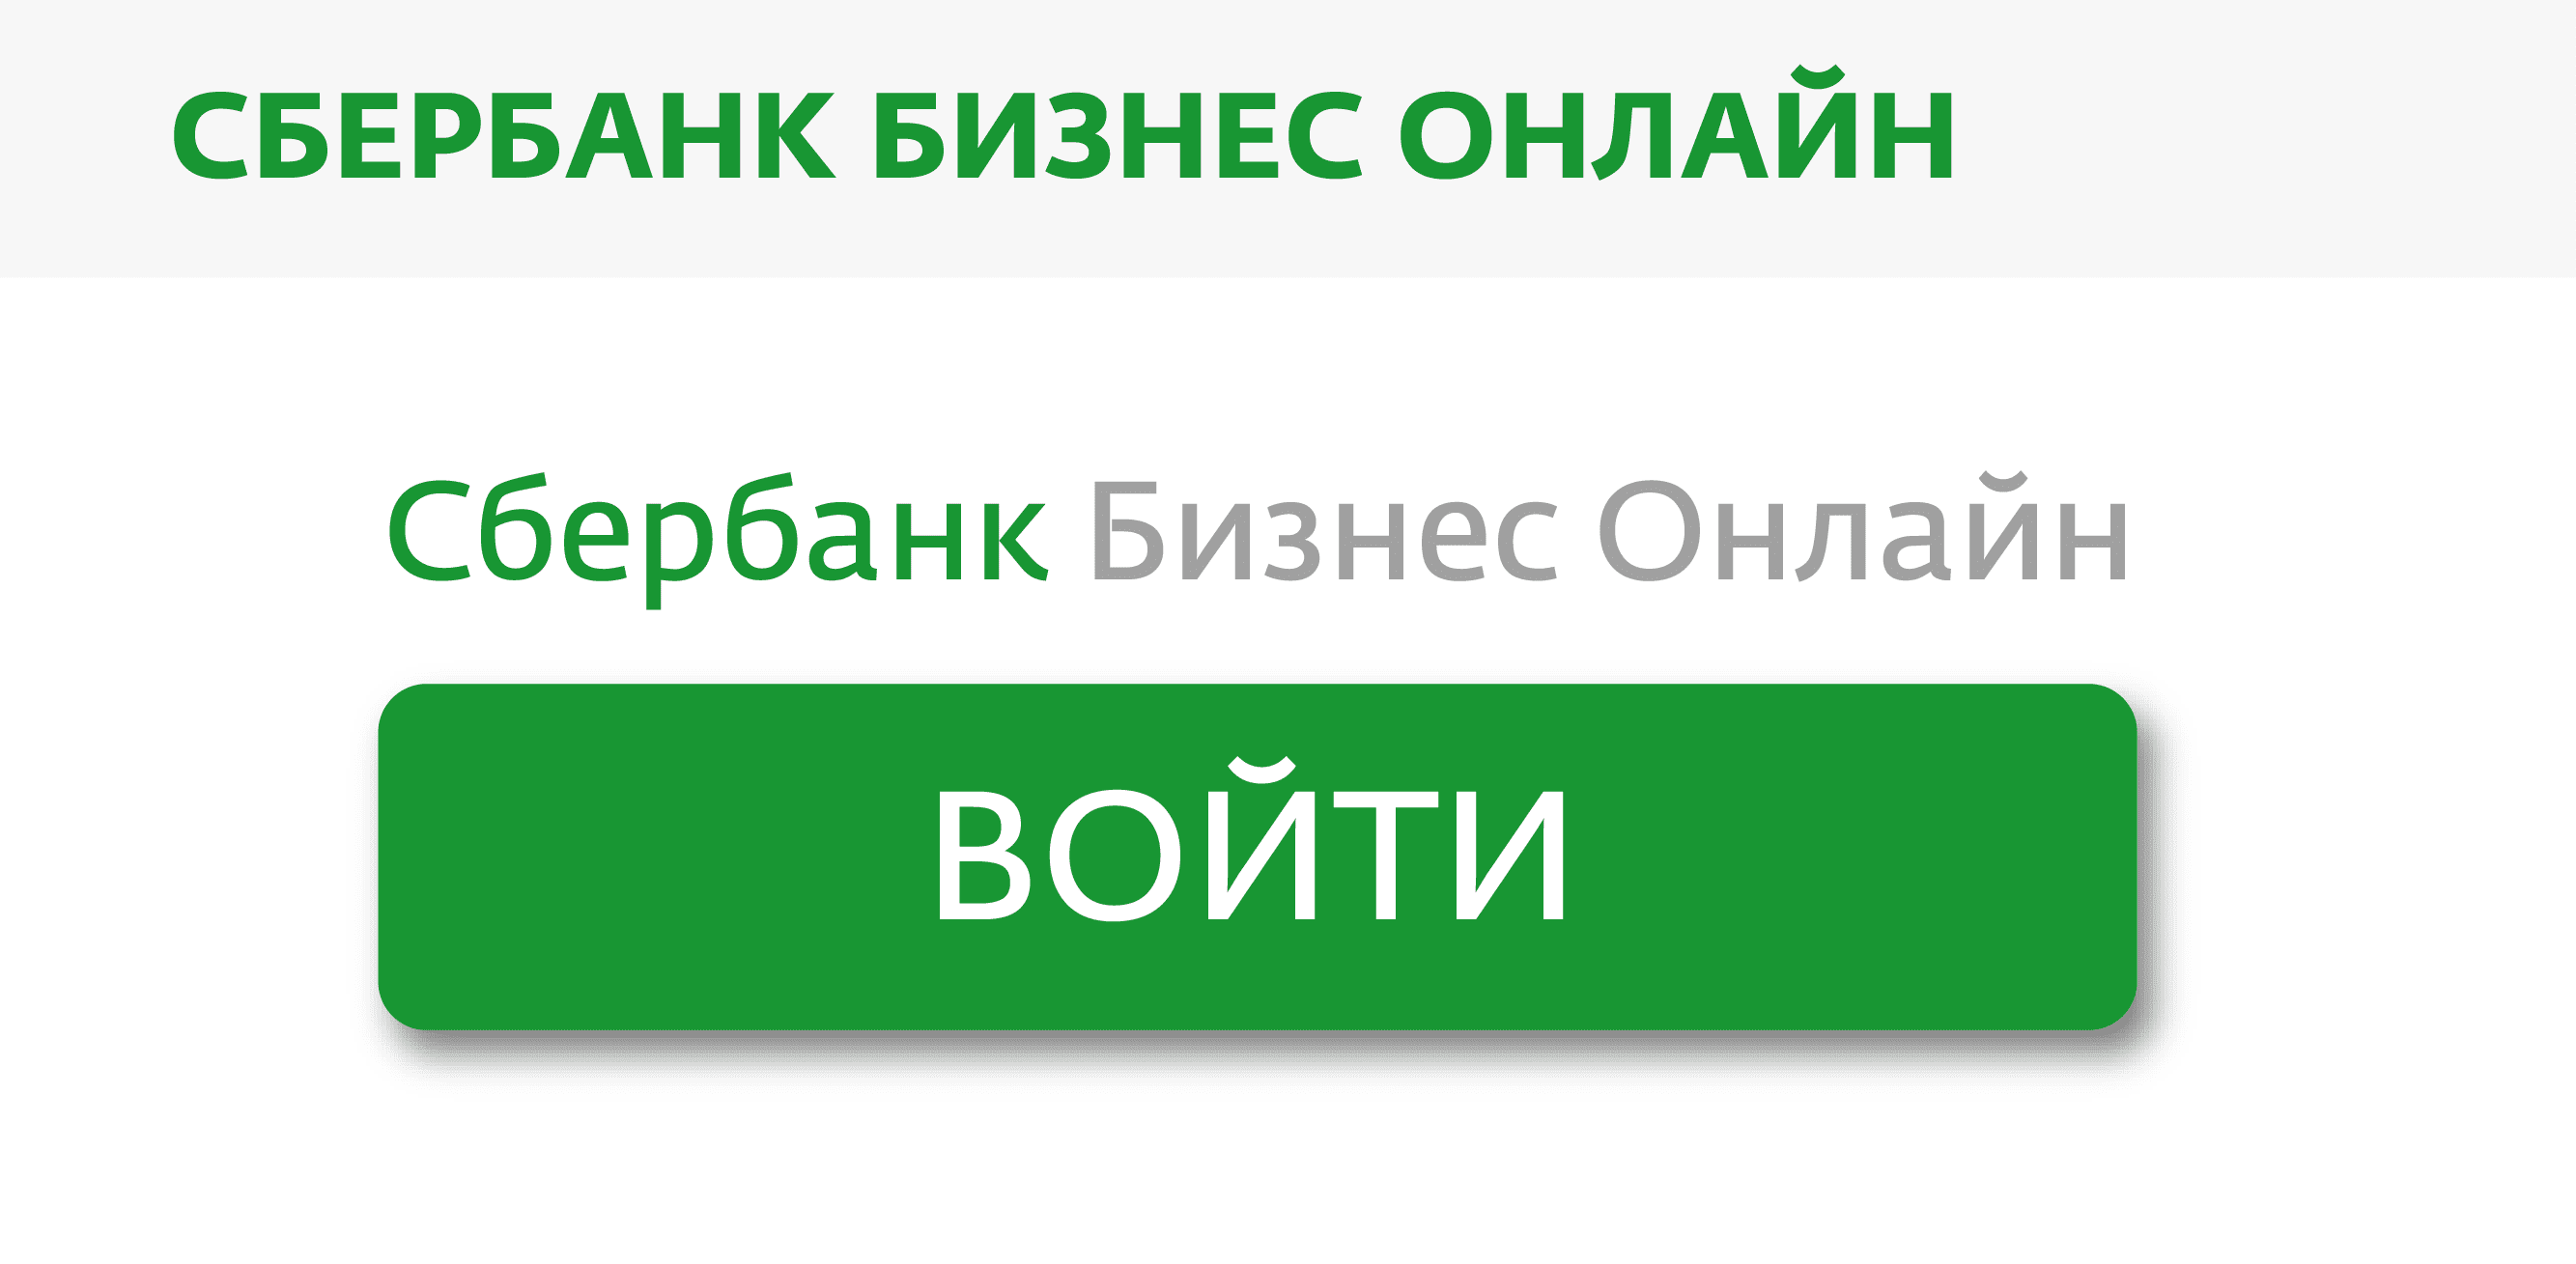 Sbrf ru сбербанк бизнес онлайн малому сколько стоит франшиза турагентства